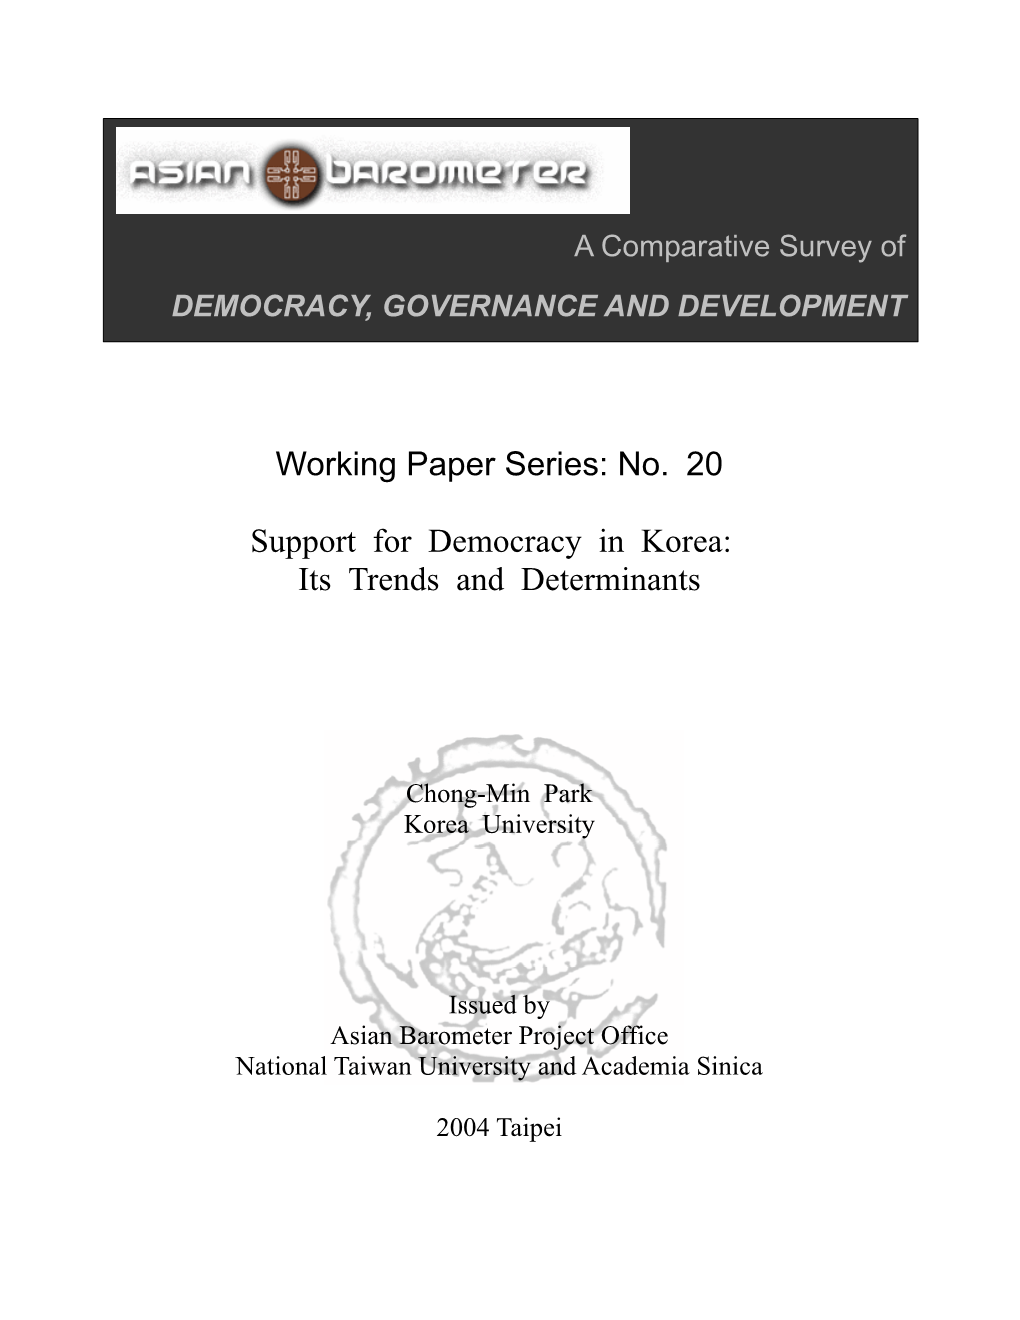 Public Trust in Democratic Institutions